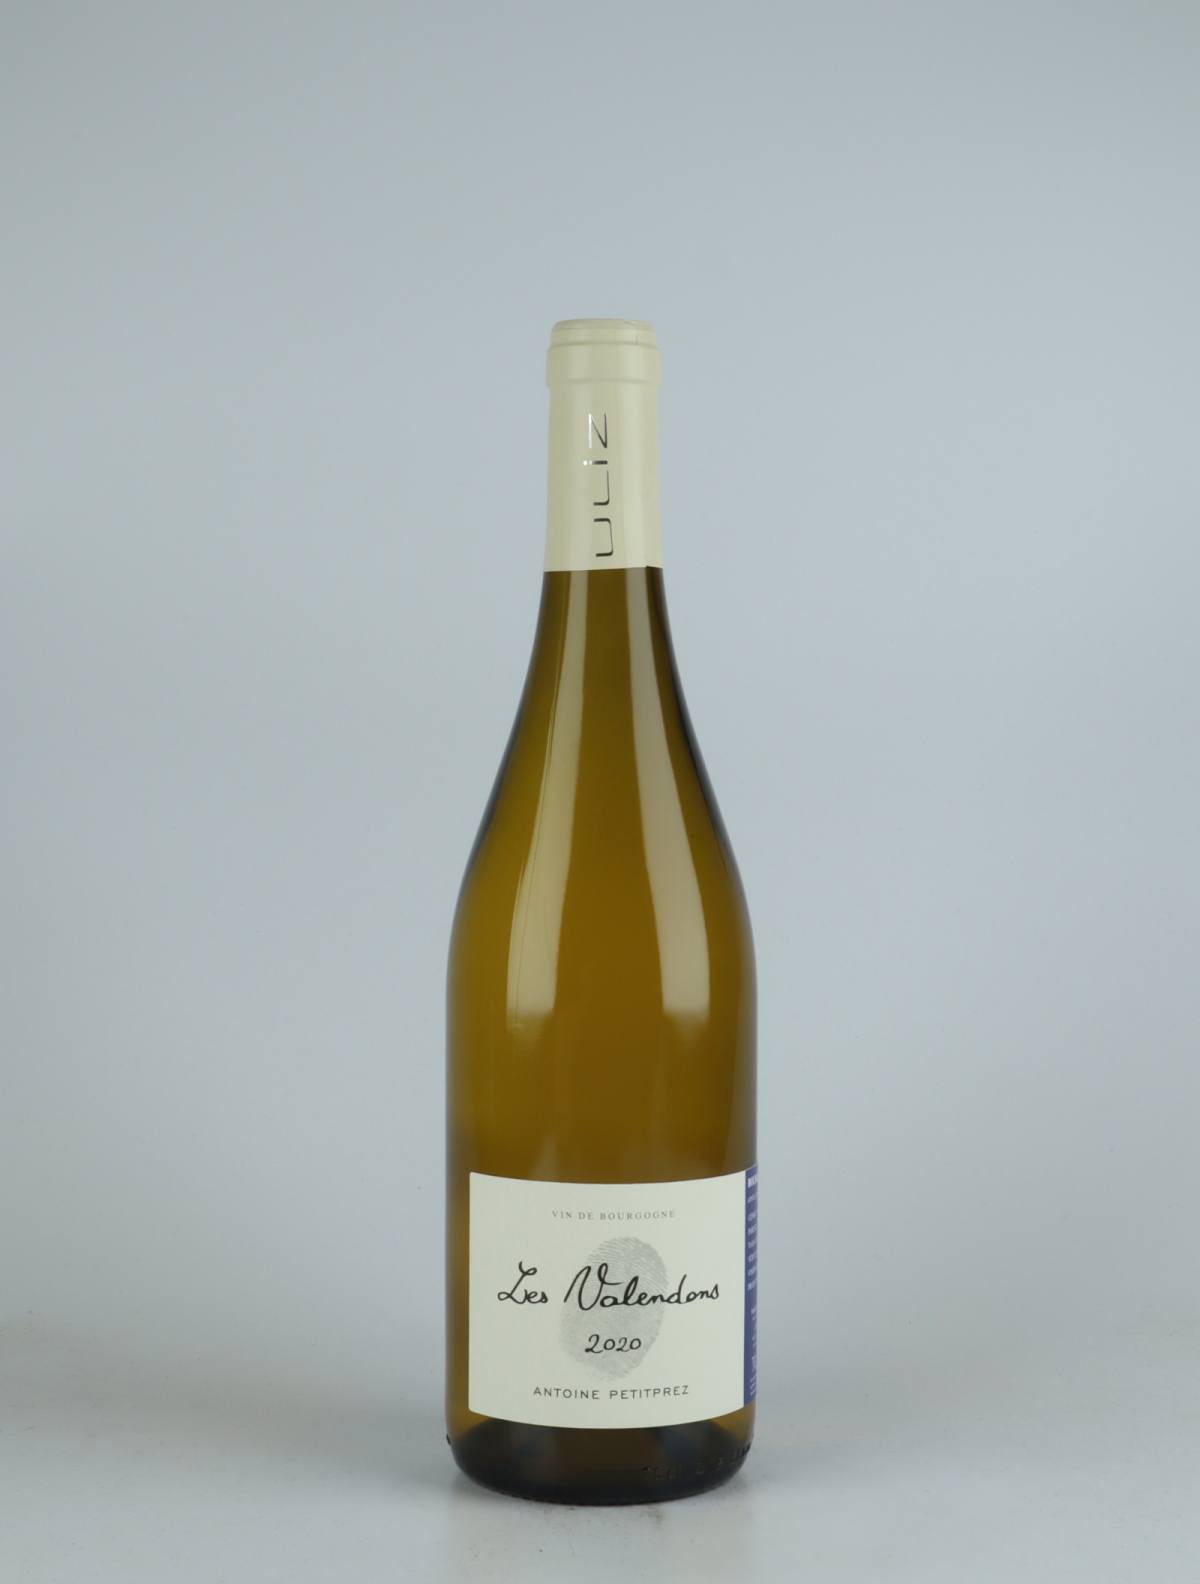 A bottle 2020 Bourgogne Aligoté - Les Valendons White wine from Antoine Petitprez, Burgundy in France